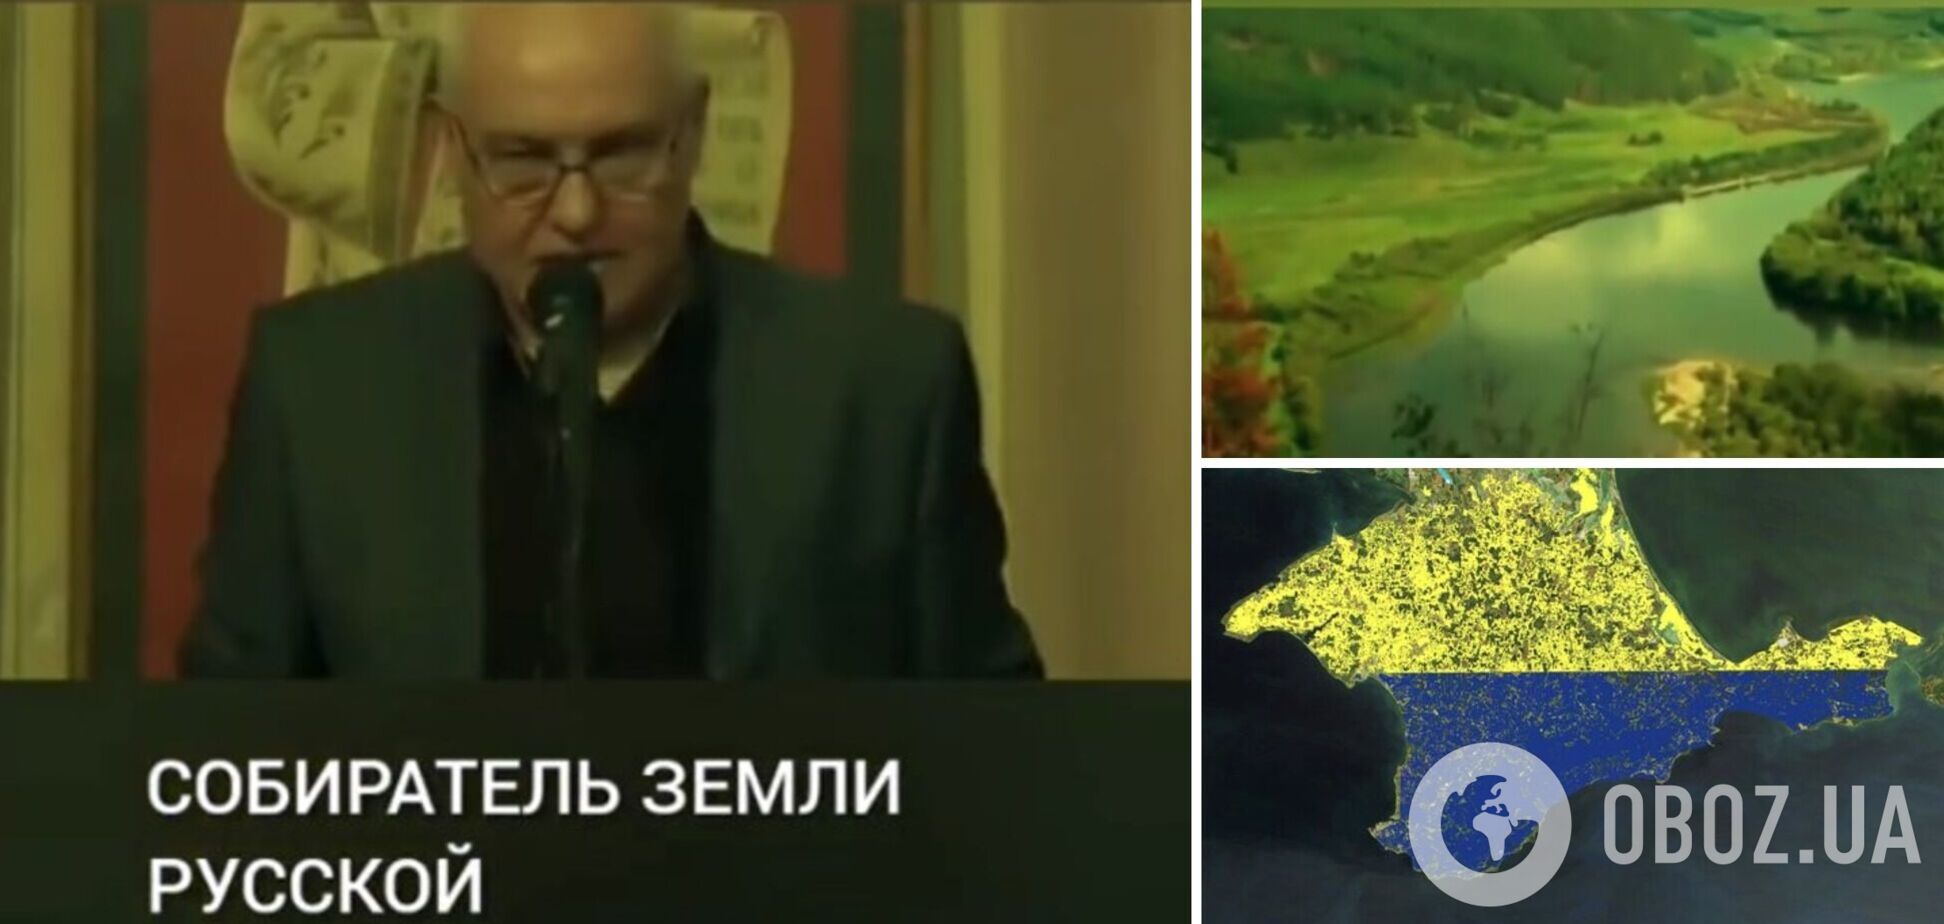 Путин хвастает 'присвоением' Крыма, а сам сдает российские земли Китаю: видео с разоблачением взбудоражило сеть